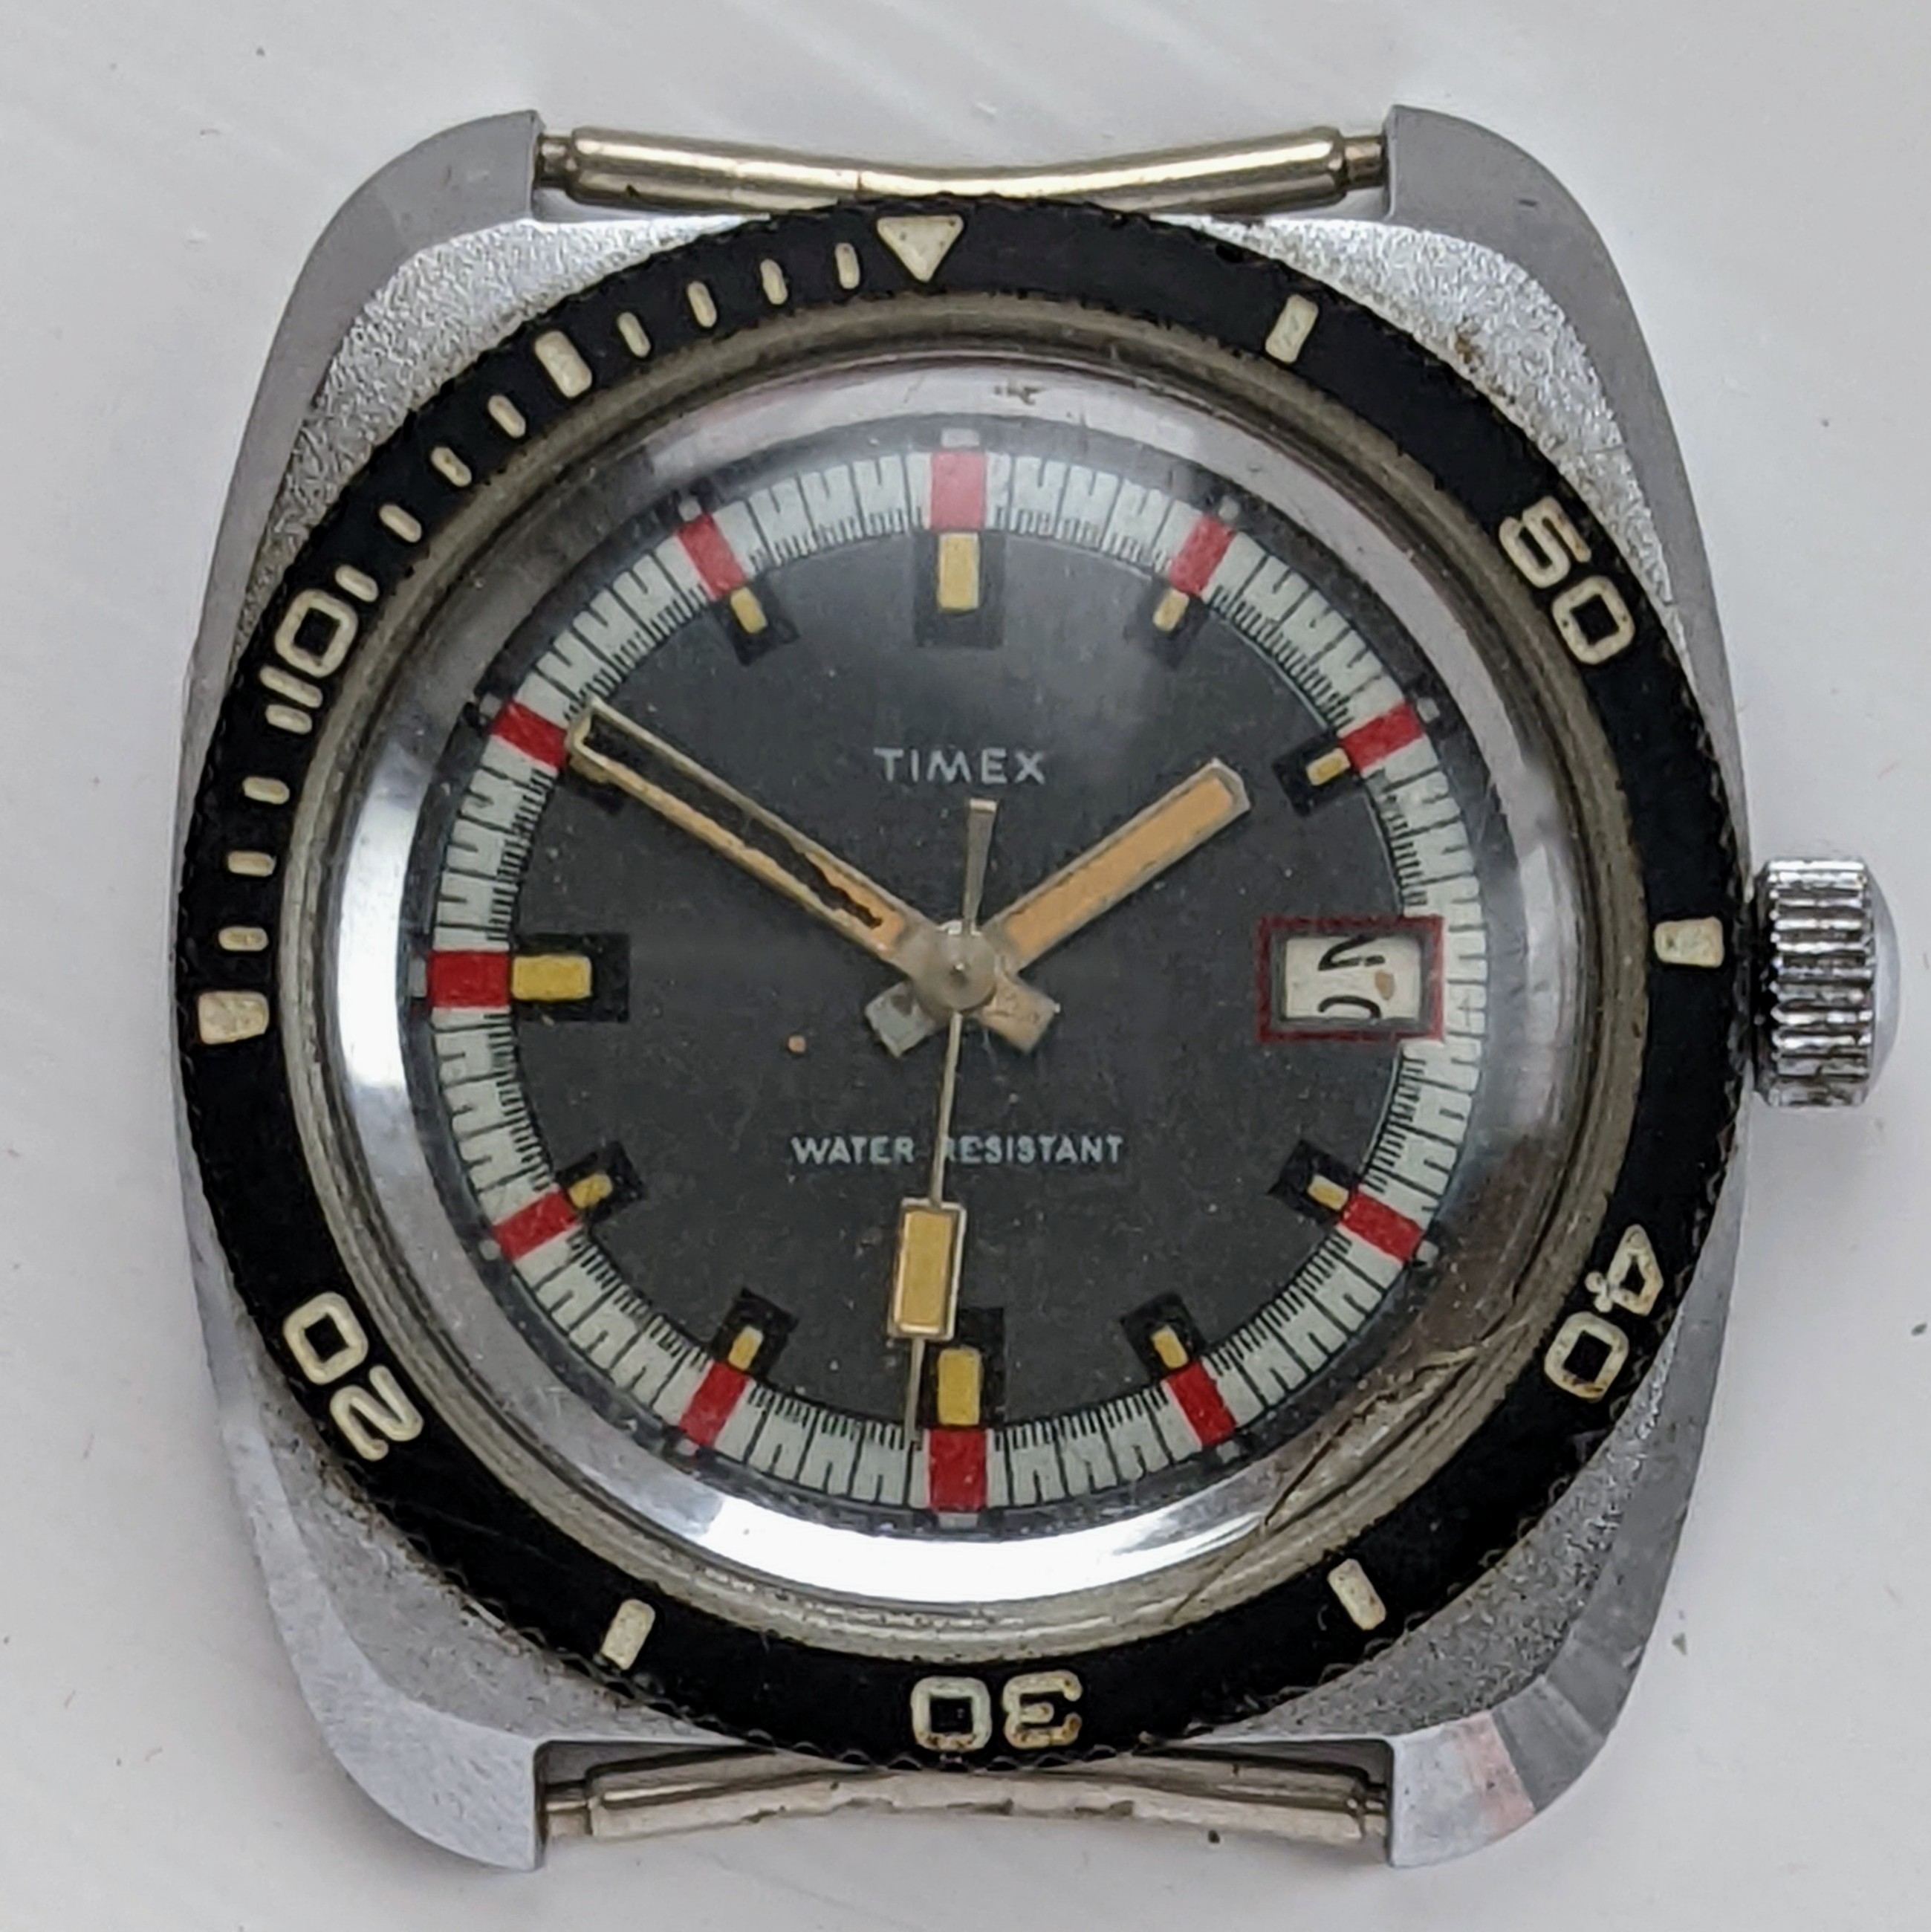 Timex Marlin 27670 2572 [1972] Dive Watch